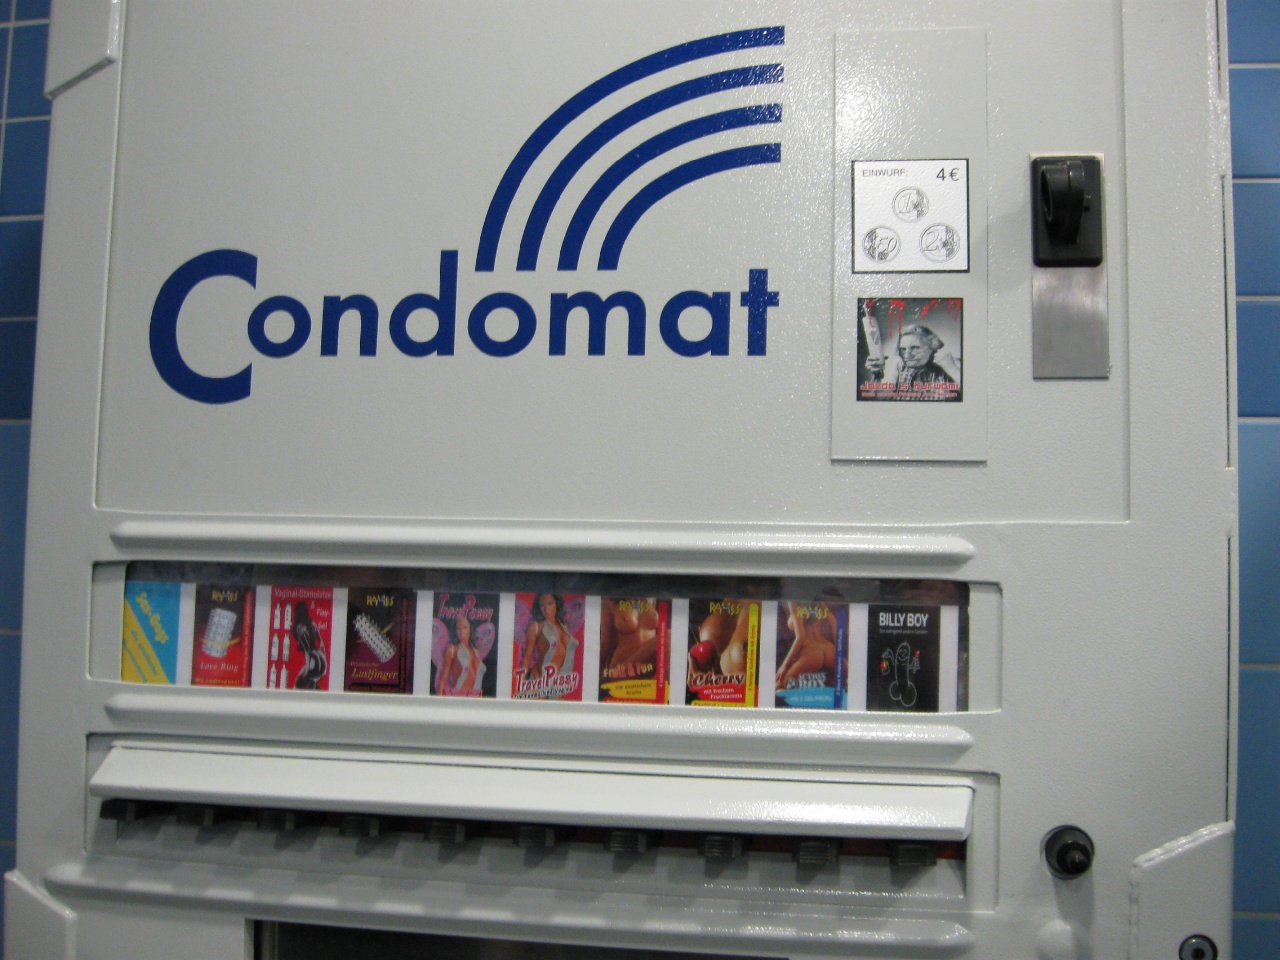 Auf dem Bild ist ein Kondomautomat zu sehen